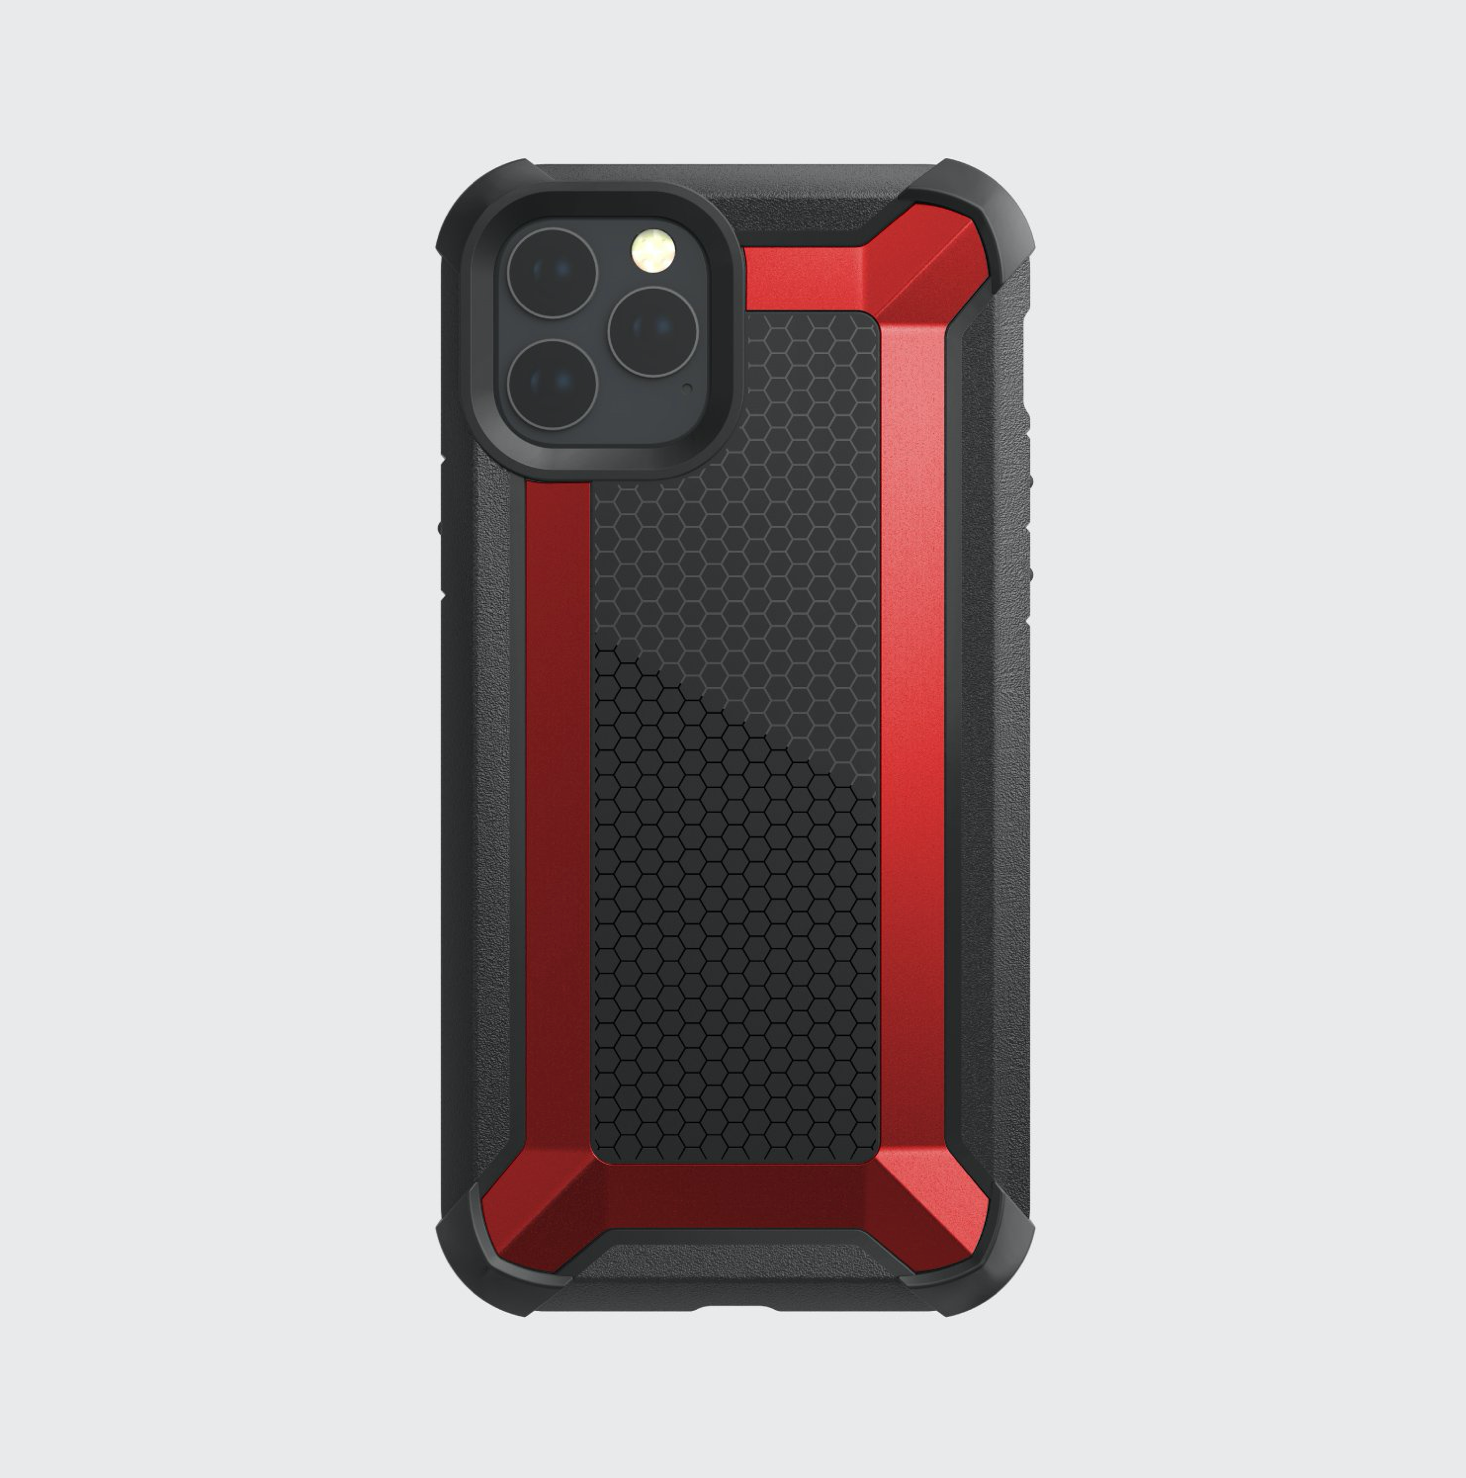 Estuche xdoria defense tactical iphone 11 pro (5.8) color rojo / negro